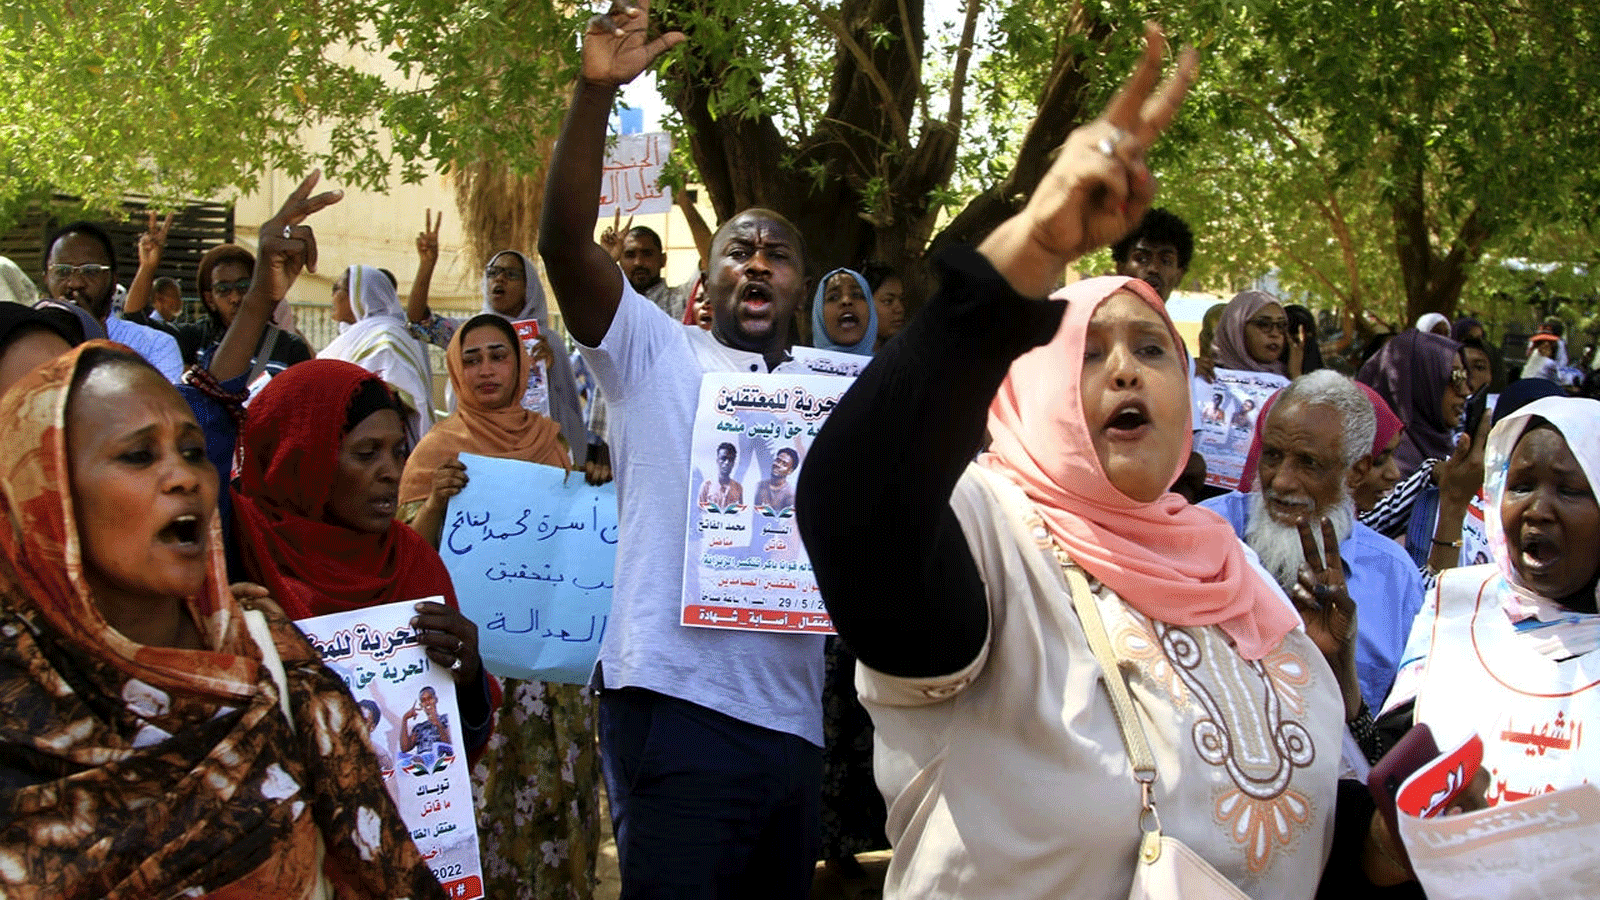 محتجون خارج محكمة بالعاصمة السودانية الخرطوم الأحد ، حيث بدأت محاكمة أربعة متهمين بطعن جنرال بالشرطة قاتلة في وقت سابق من هذا العام وتم تأجيلها.